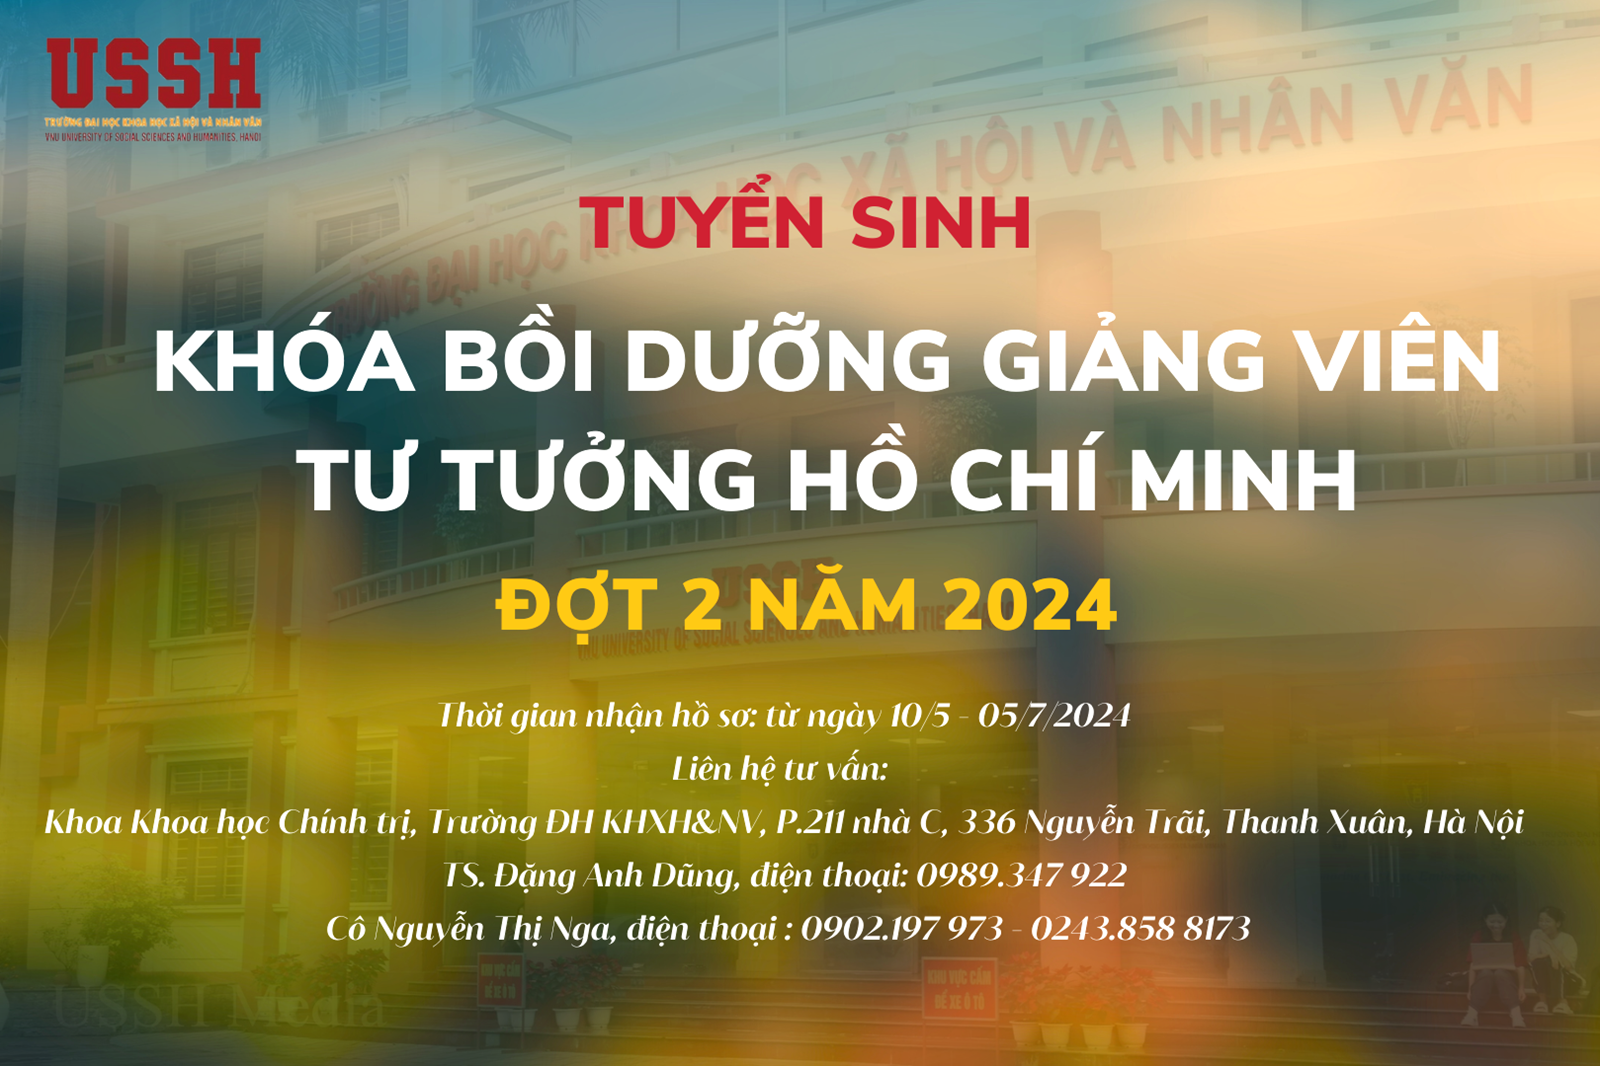 Thông báo Tuyển sinh khóa bồi dưỡng giảng viên Tư tưởng Hồ Chí Minh, đợt 2 năm 2024